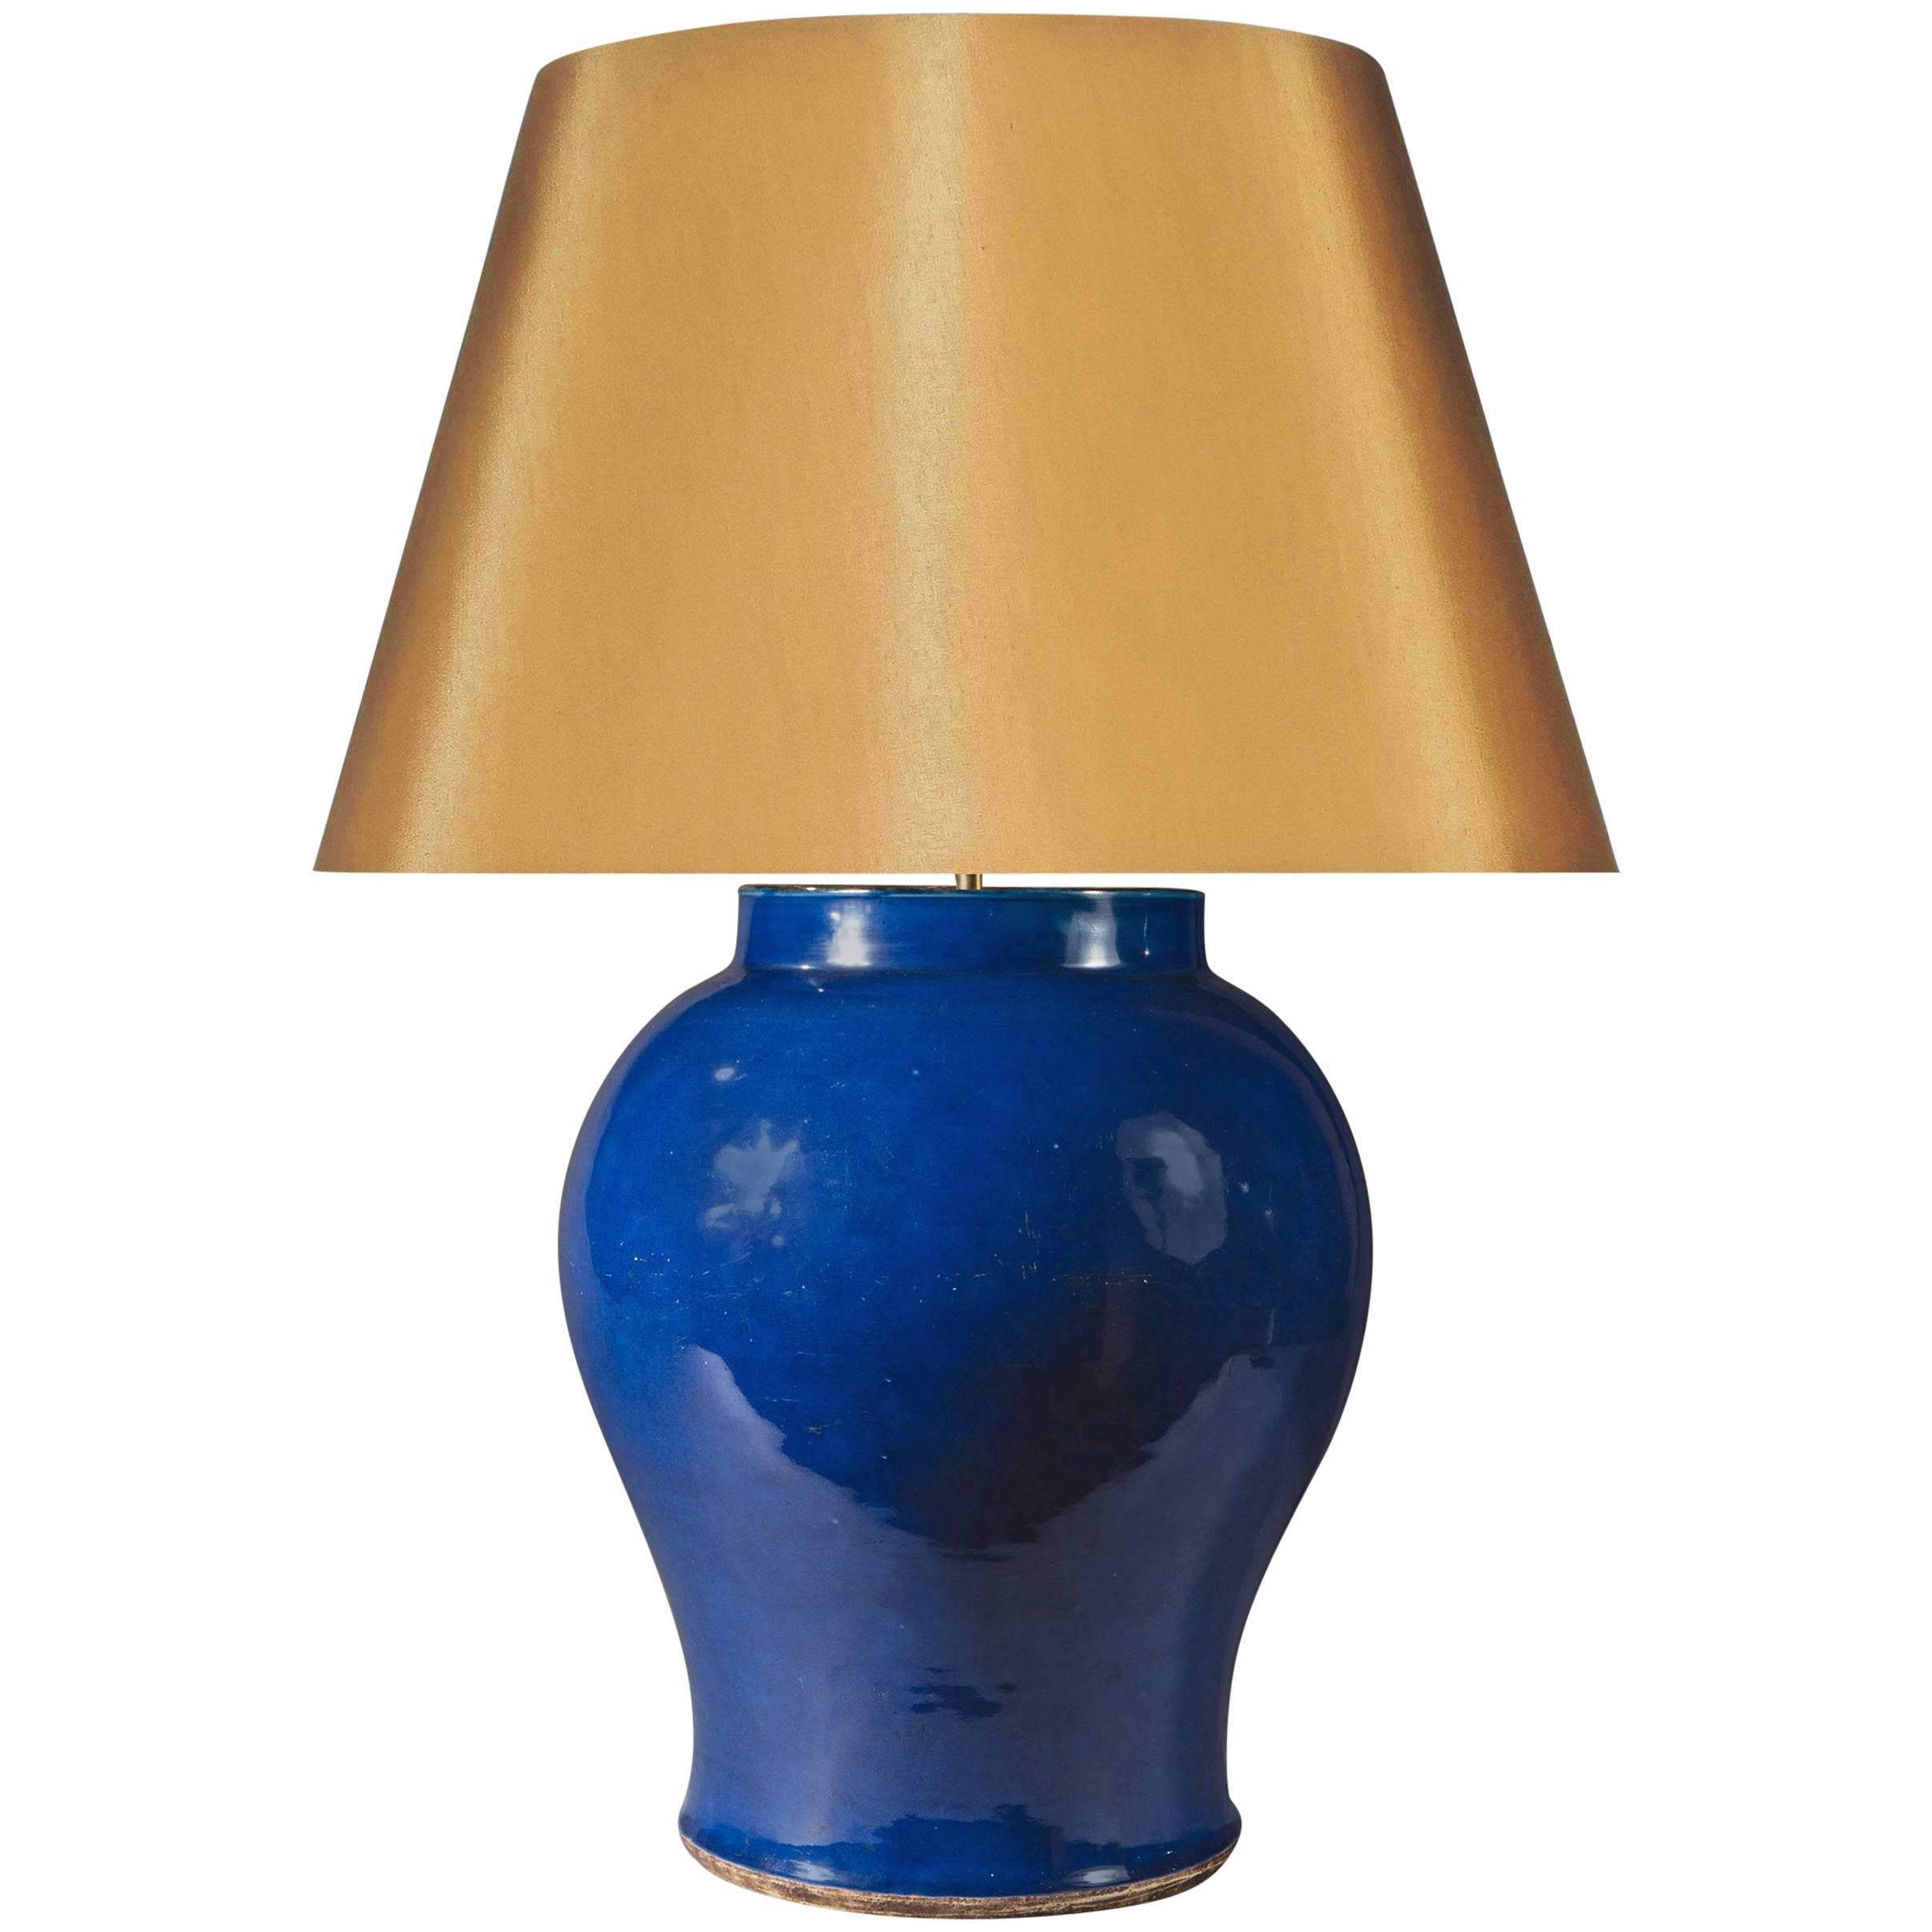 Large 19th Century Chinese Export Monochrome Blue Glaze Vase Lamp